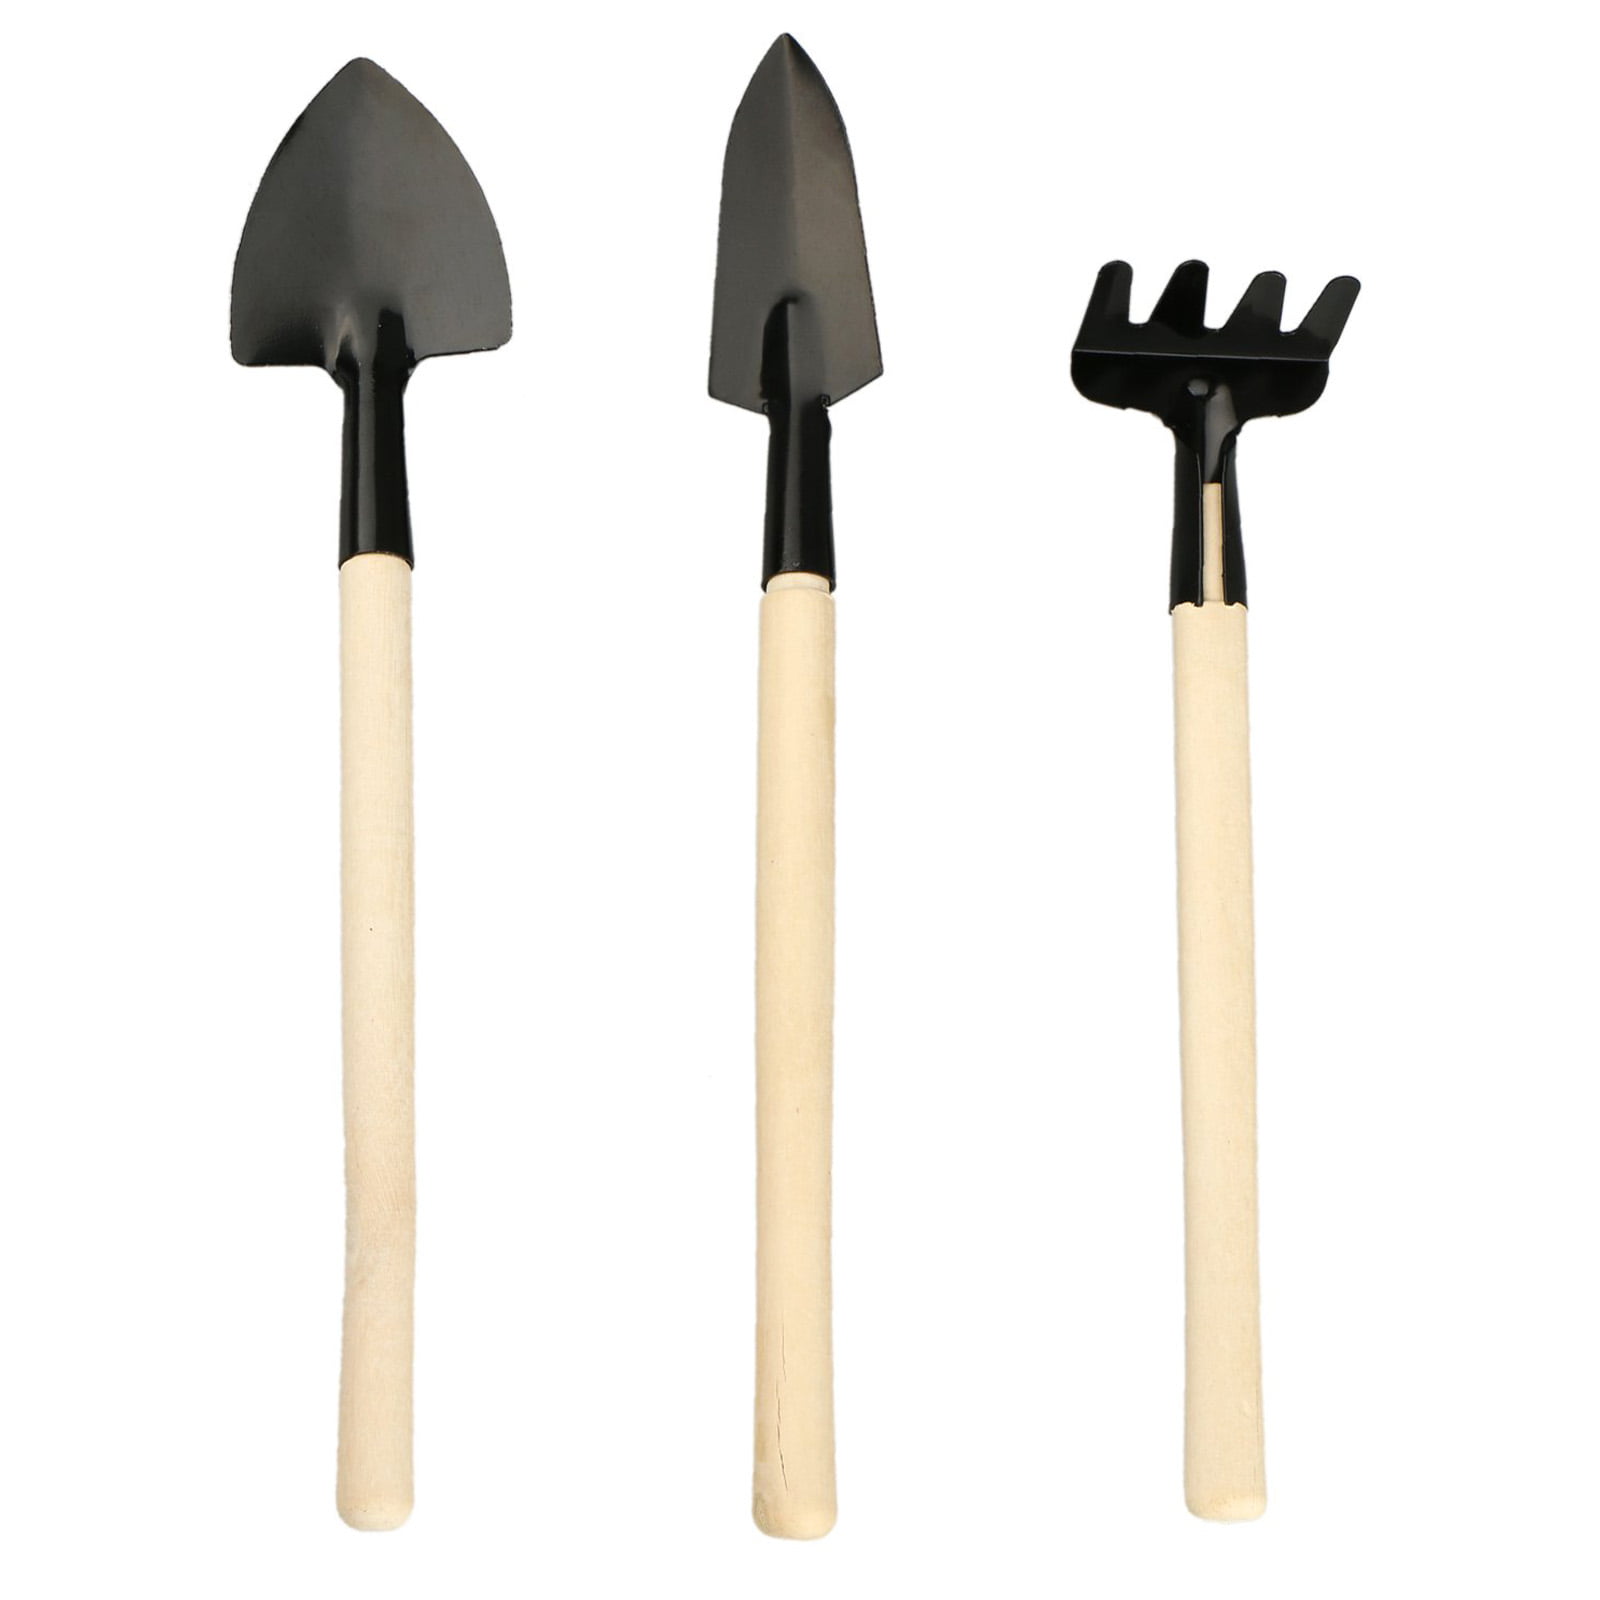 Mini Spade Shovel Set Wooden Handle Indoor Gardening Tool Garden  J 